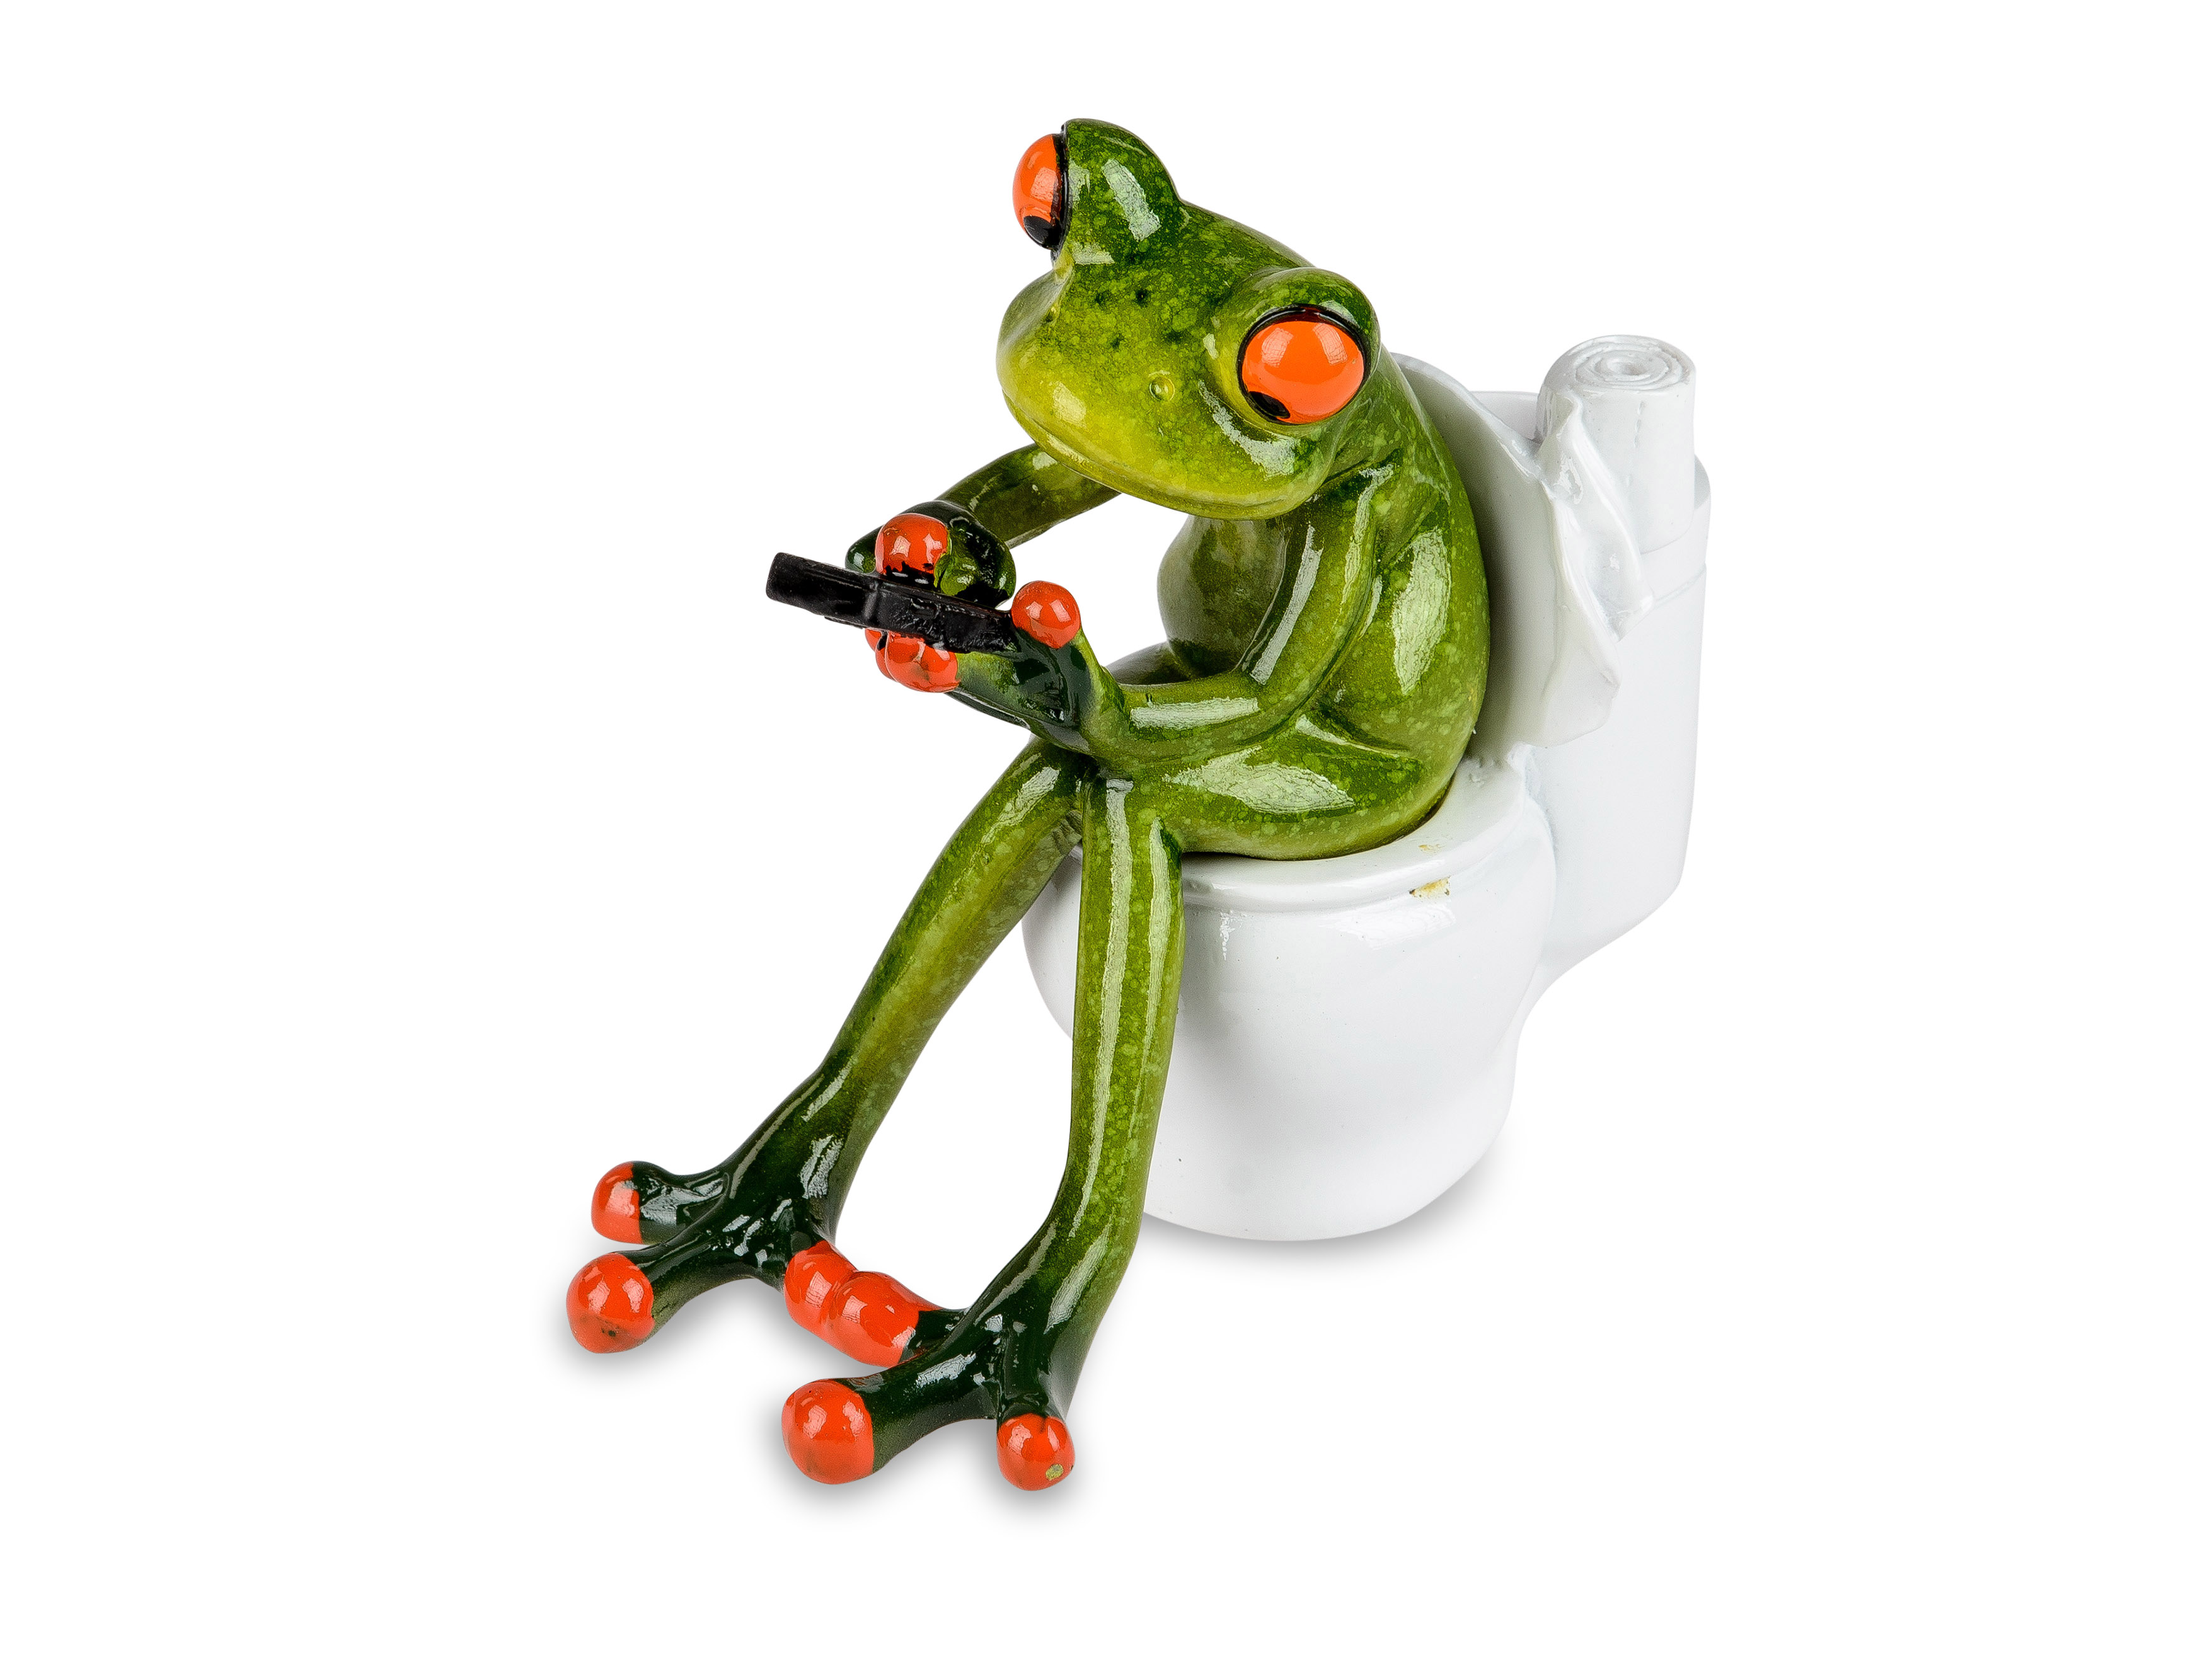 Frosch auf Toilette